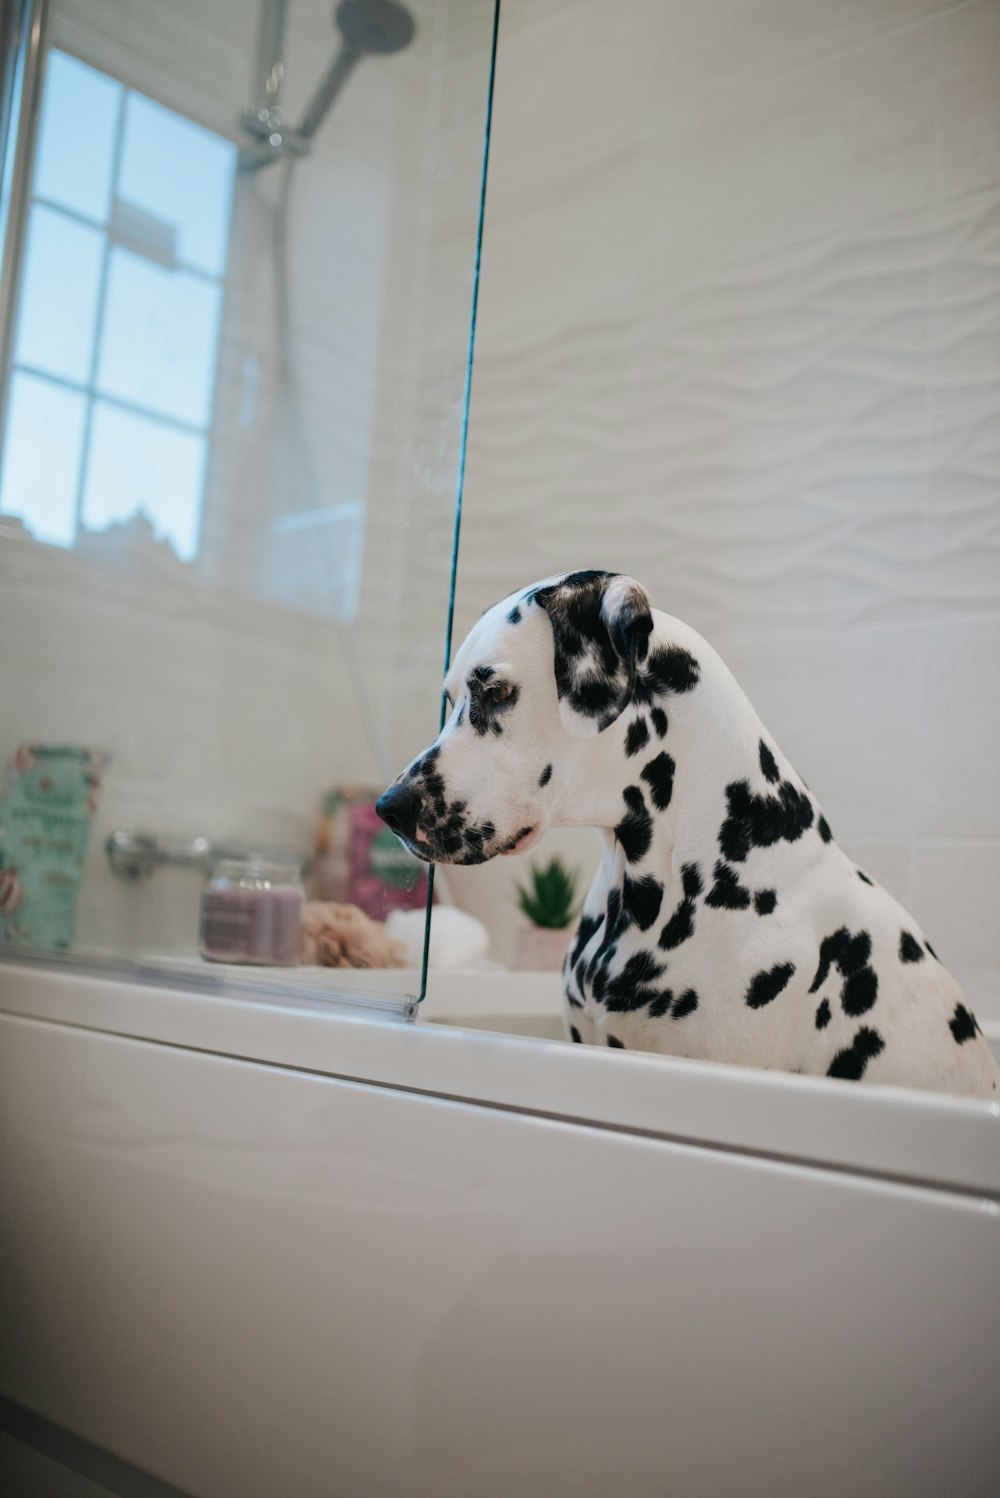 a dalmatian dog sitting in a bath tub